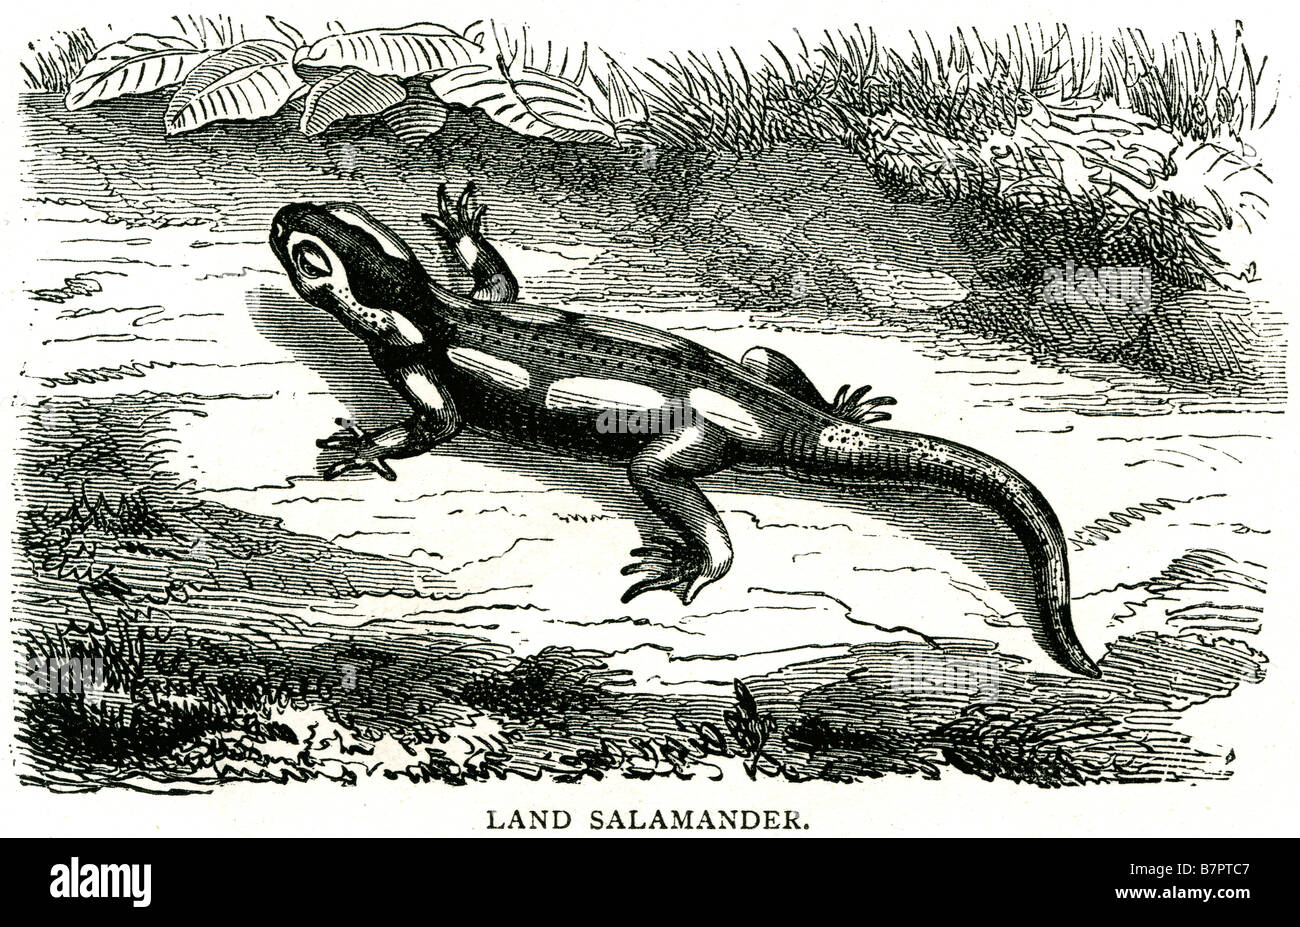 Des urodèles urodèles salamandre terrestre lizard un corps élancé devis shrub milieu naturel faune nature animal sauvage Outdoor Banque D'Images